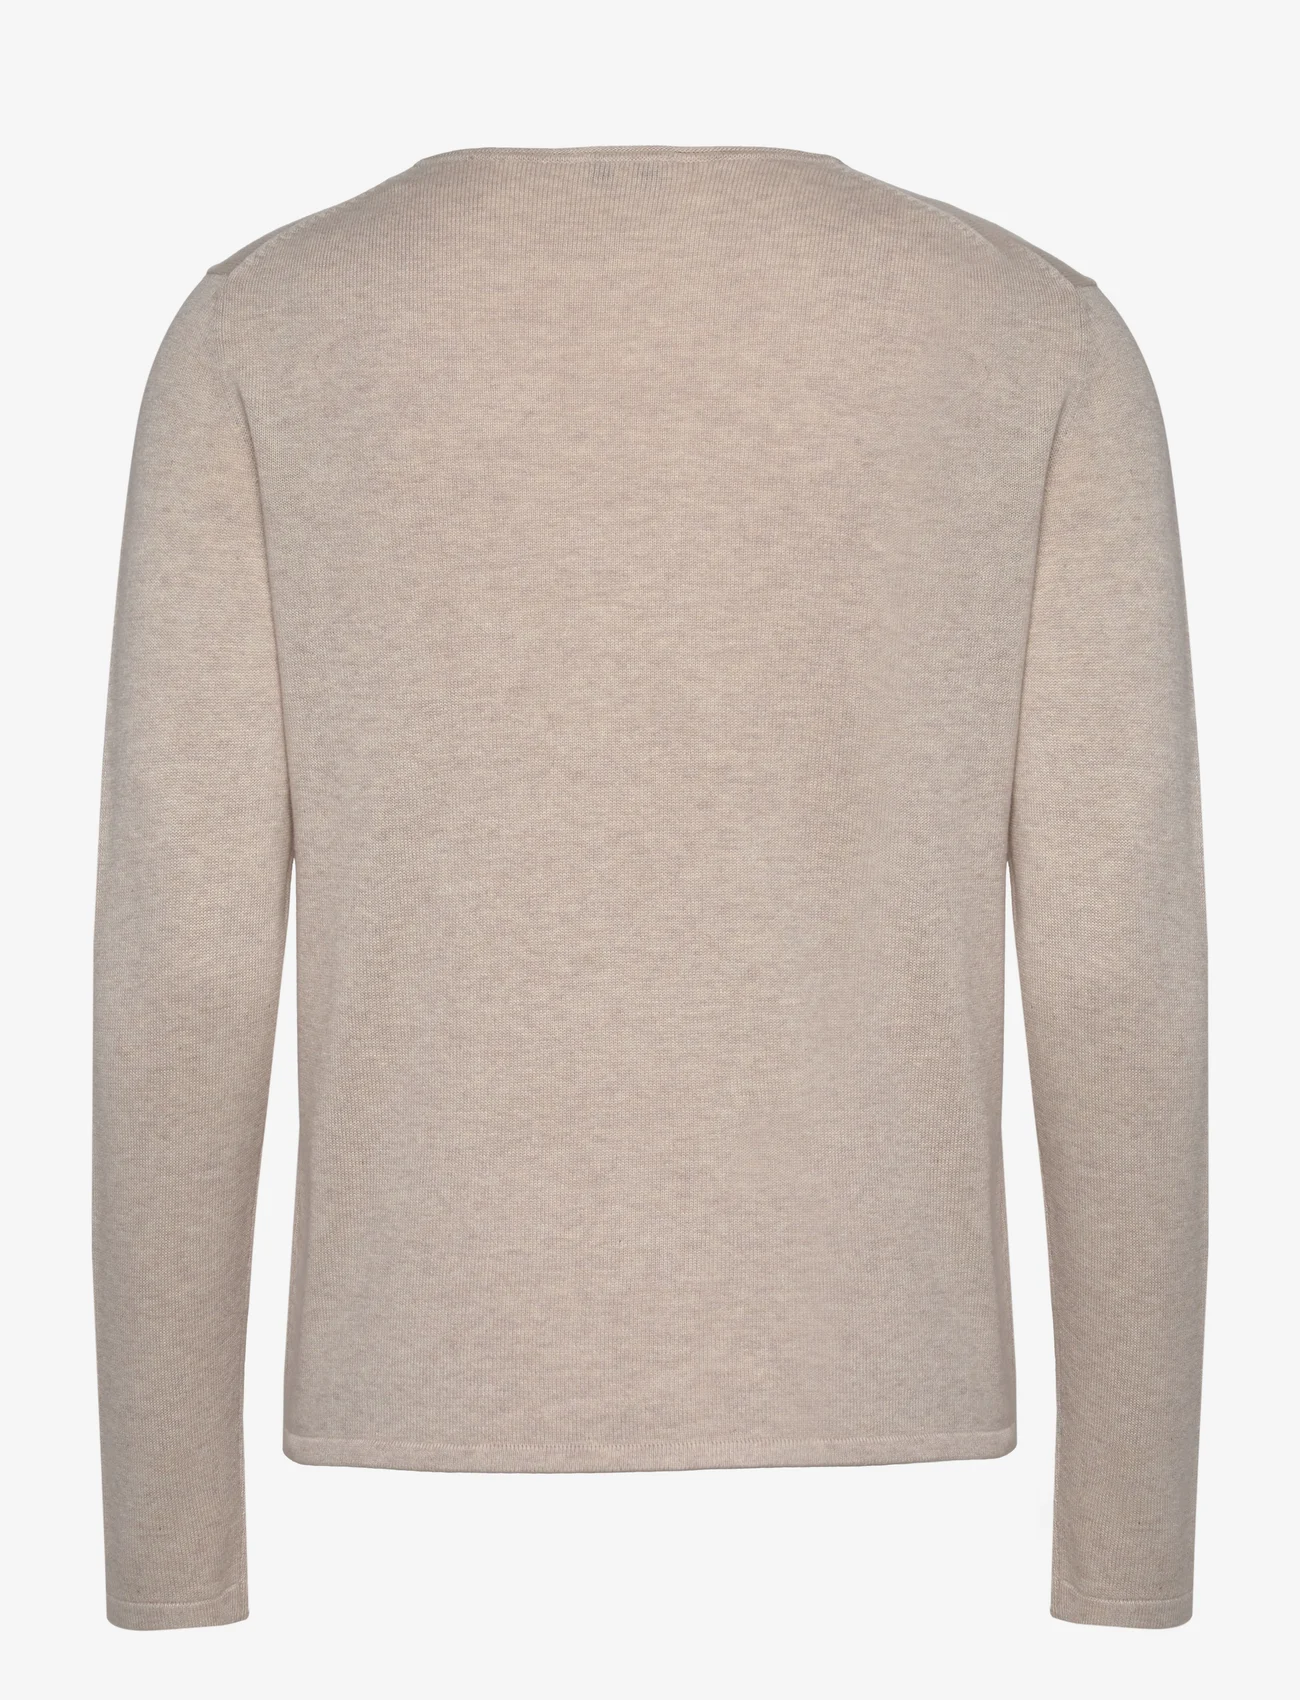 Tom Tailor - sweater basic v-neck - lowest prices - desert sand melange - 1